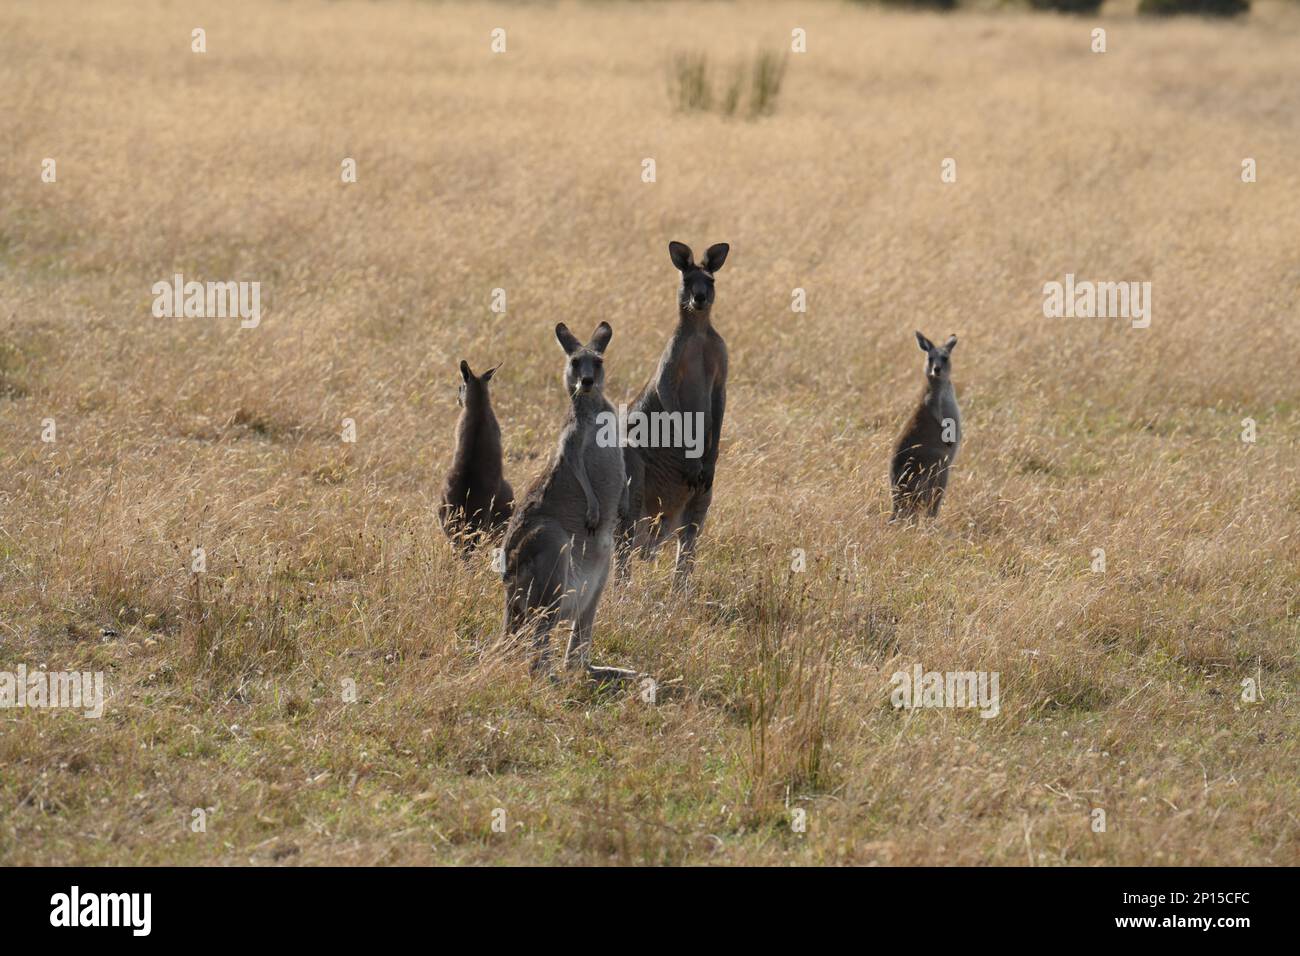 Les kangourous des prairies regardent de manière curieux vers la caméra, les oreilles vers le haut et se tiennent debout sur la garde pour tout danger. Banque D'Images